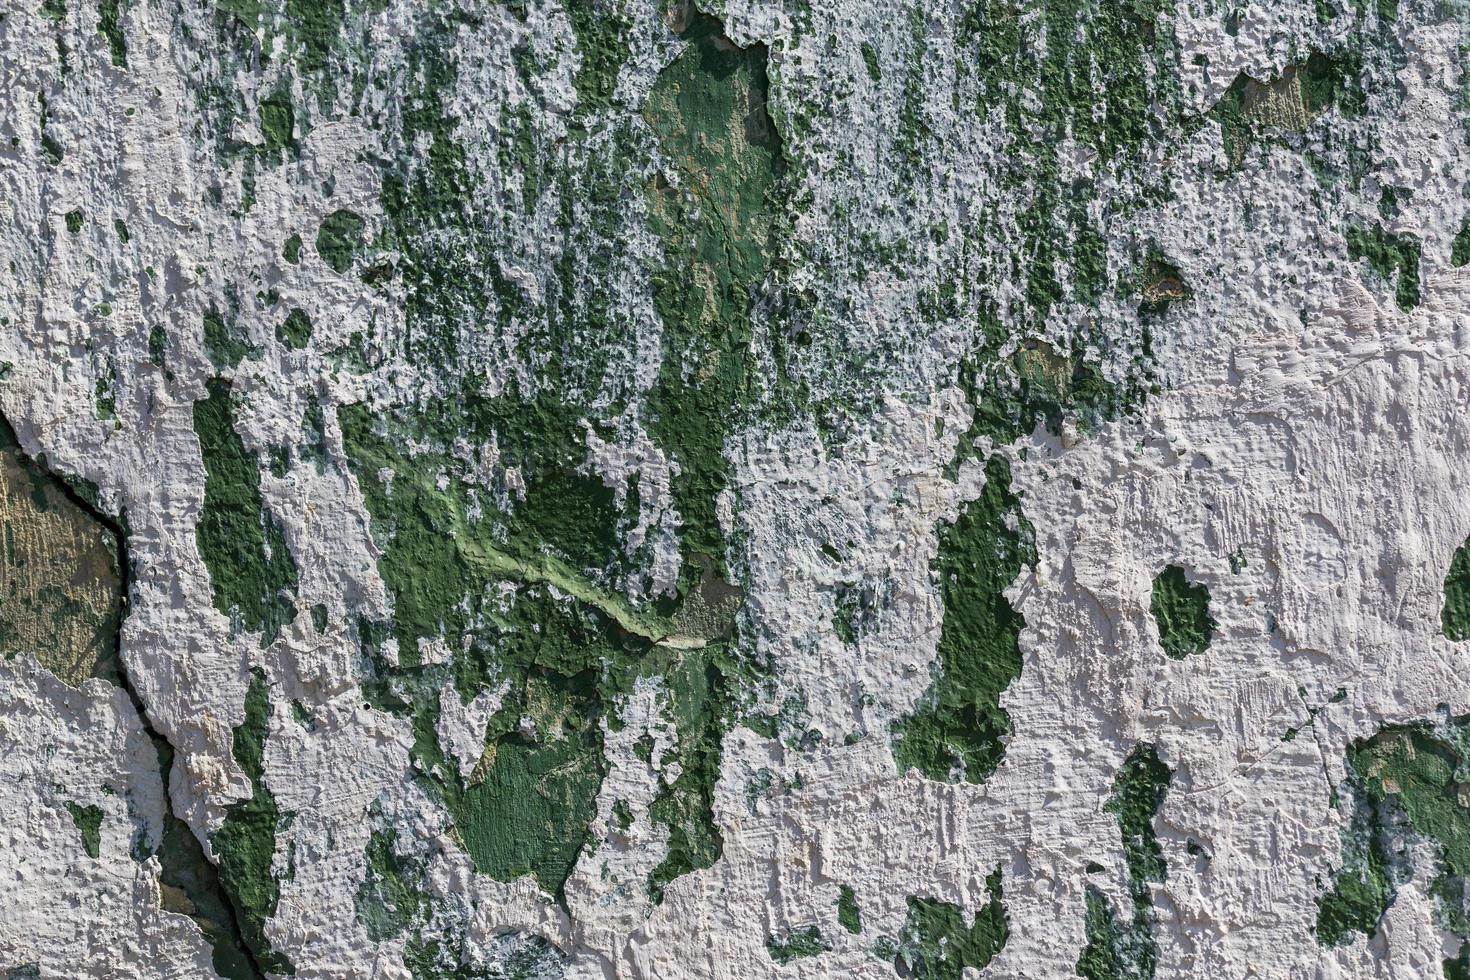 schäbige abblätternde grüne wand mit weißen putzflecken foto